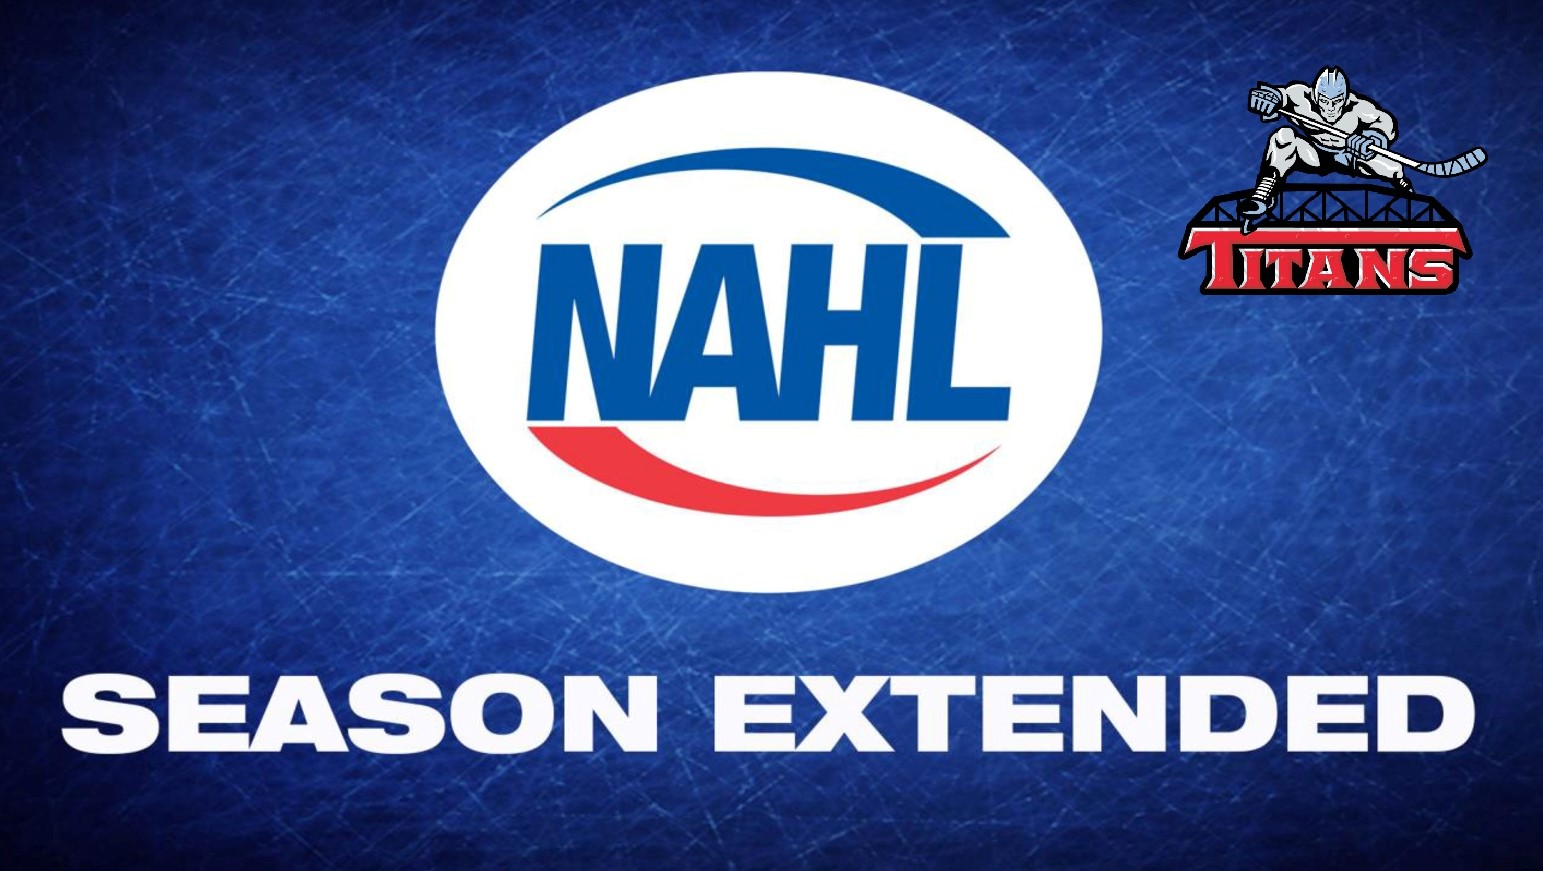 NAHL announces extension of 2020-21 season